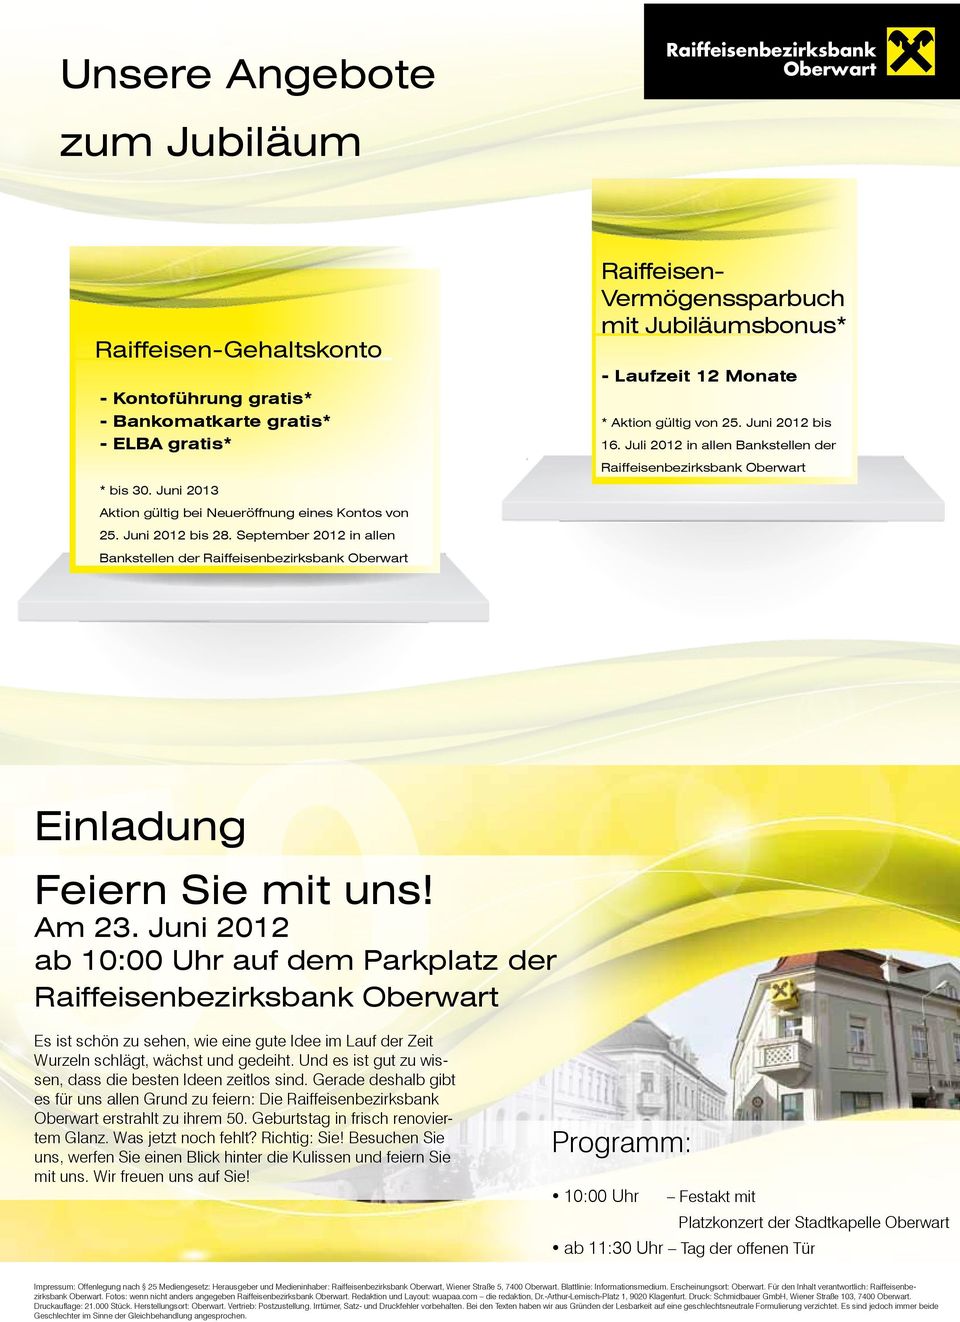 September 2012 in allen Bankstellen der Raiffeisenbezirksbank Oberwart Raiffeisen- Vermögenssparbuch mit Jubiläumsbonus* - Laufzeit 12 Monate * Aktion gültig von 25. Juni 2012 bis 16.